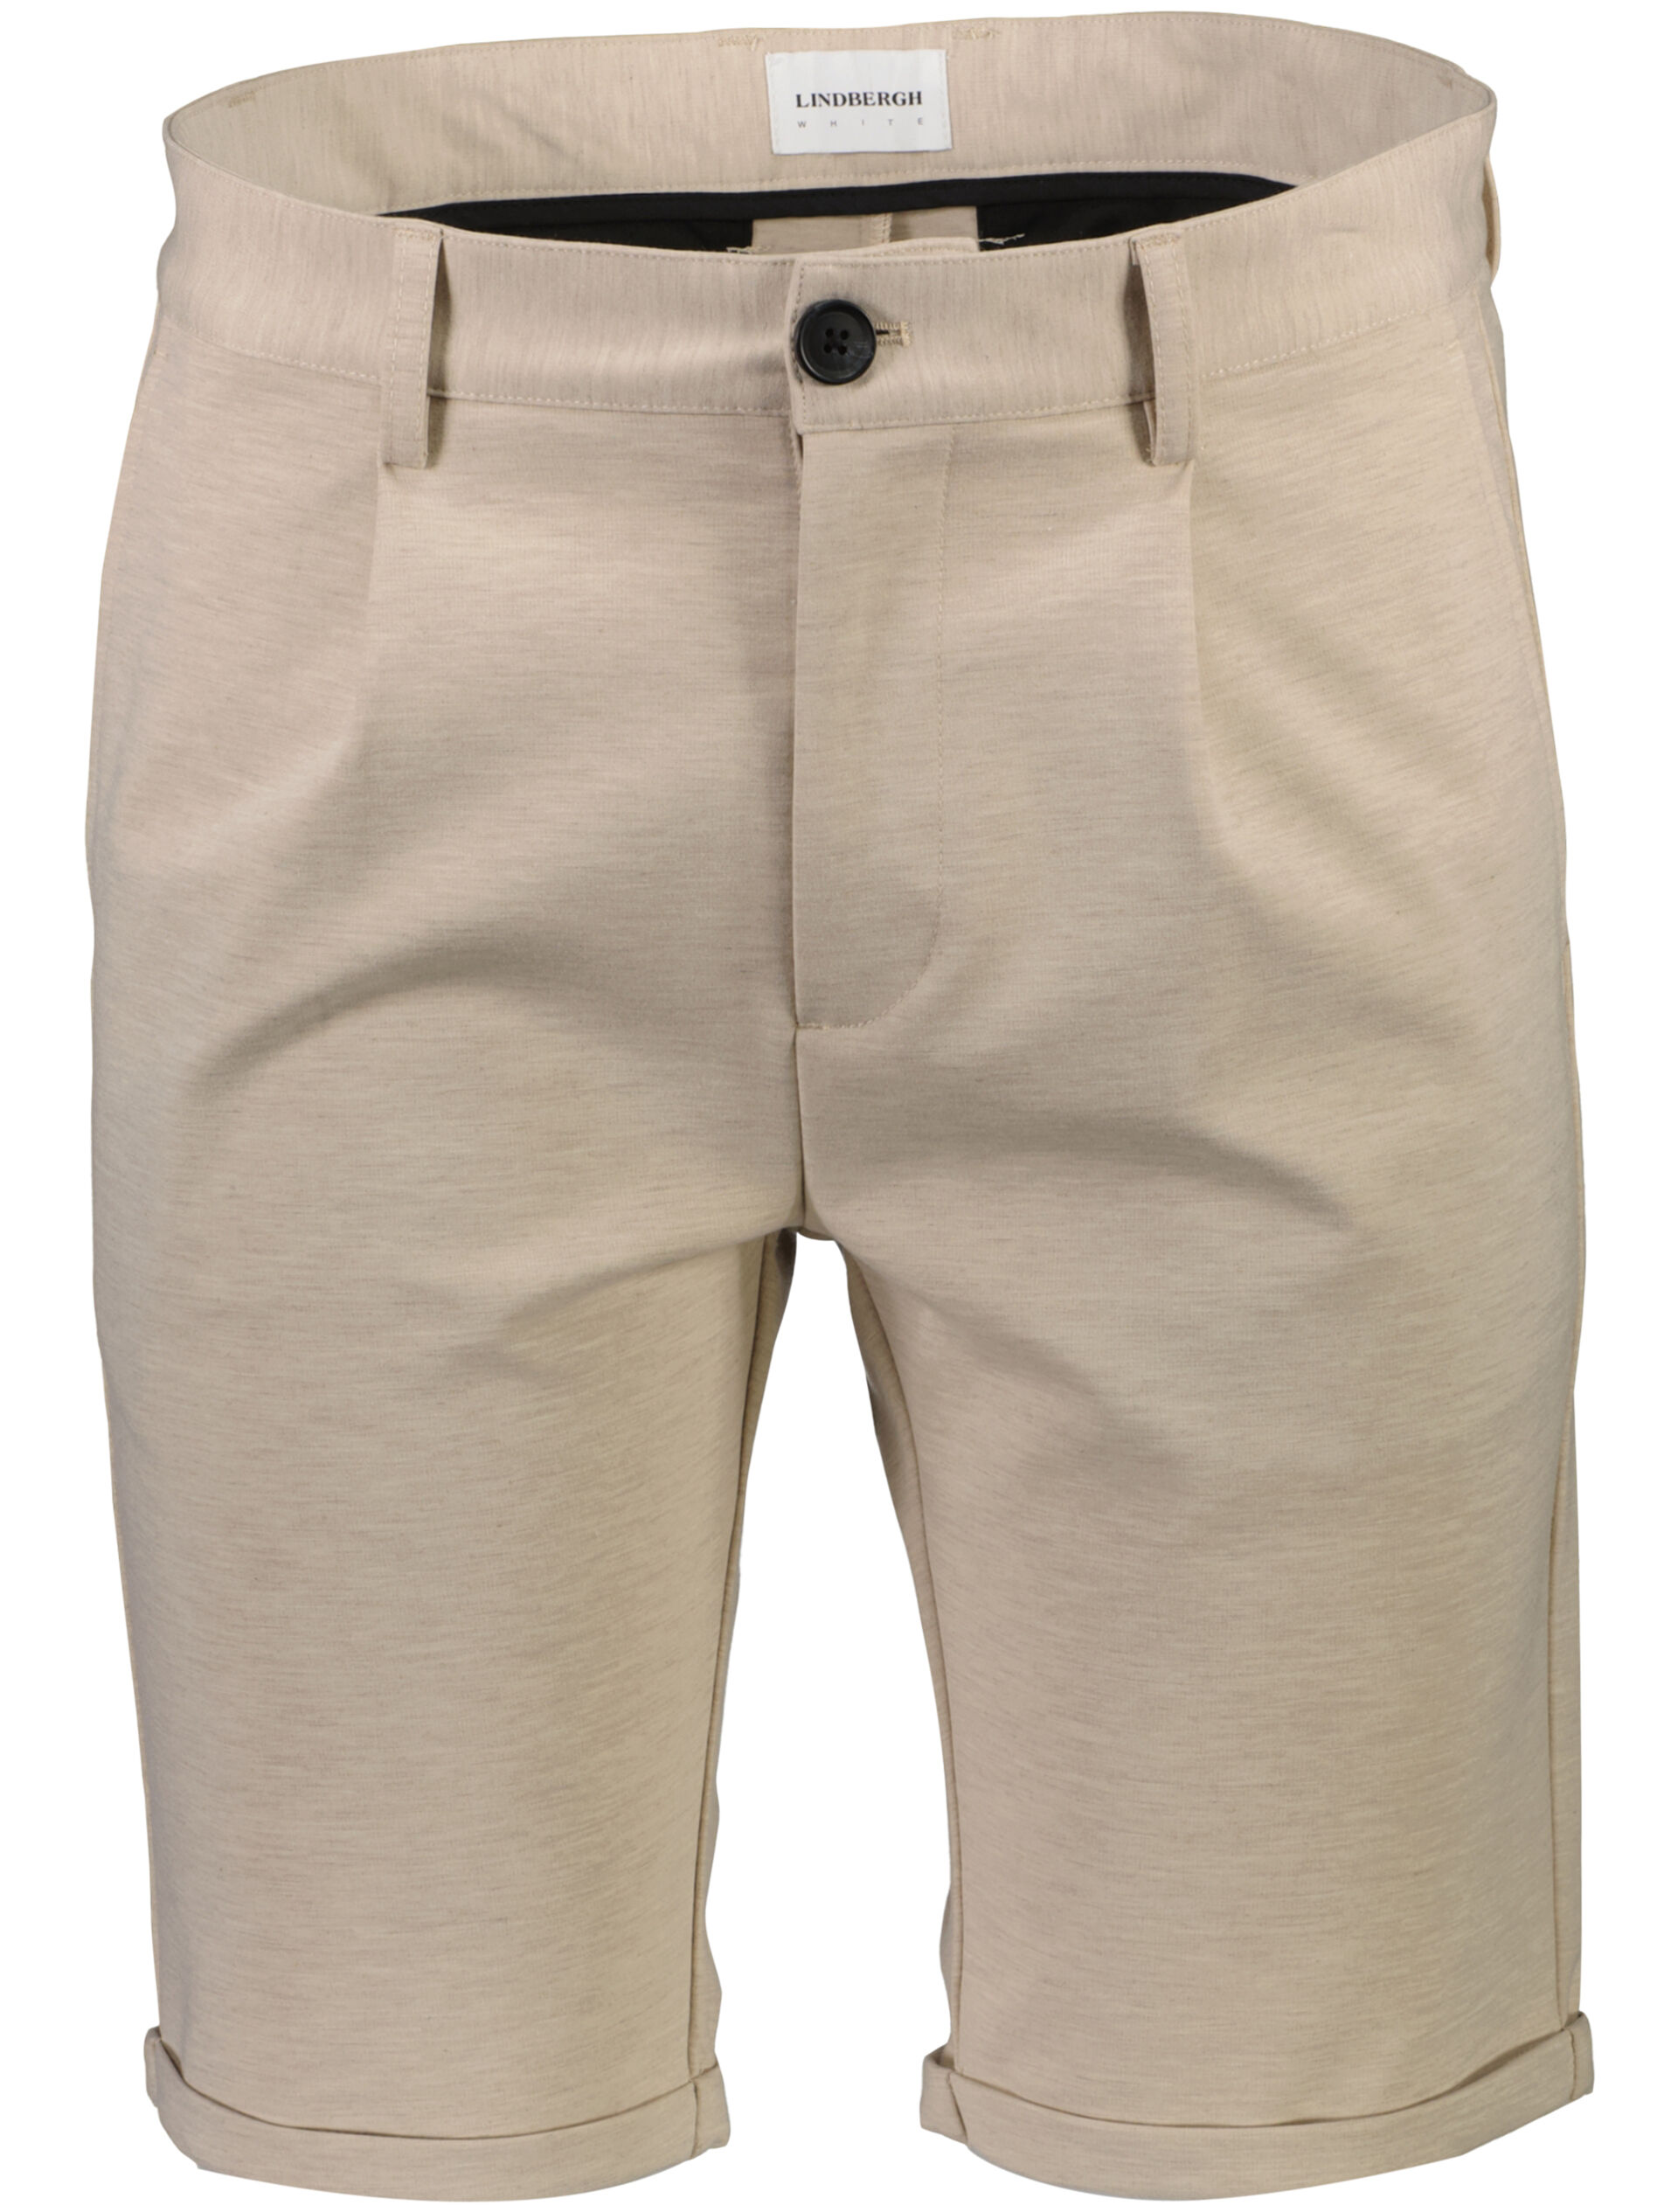 Pantalon korte broek Pantalon korte broek Grijs 30-501024